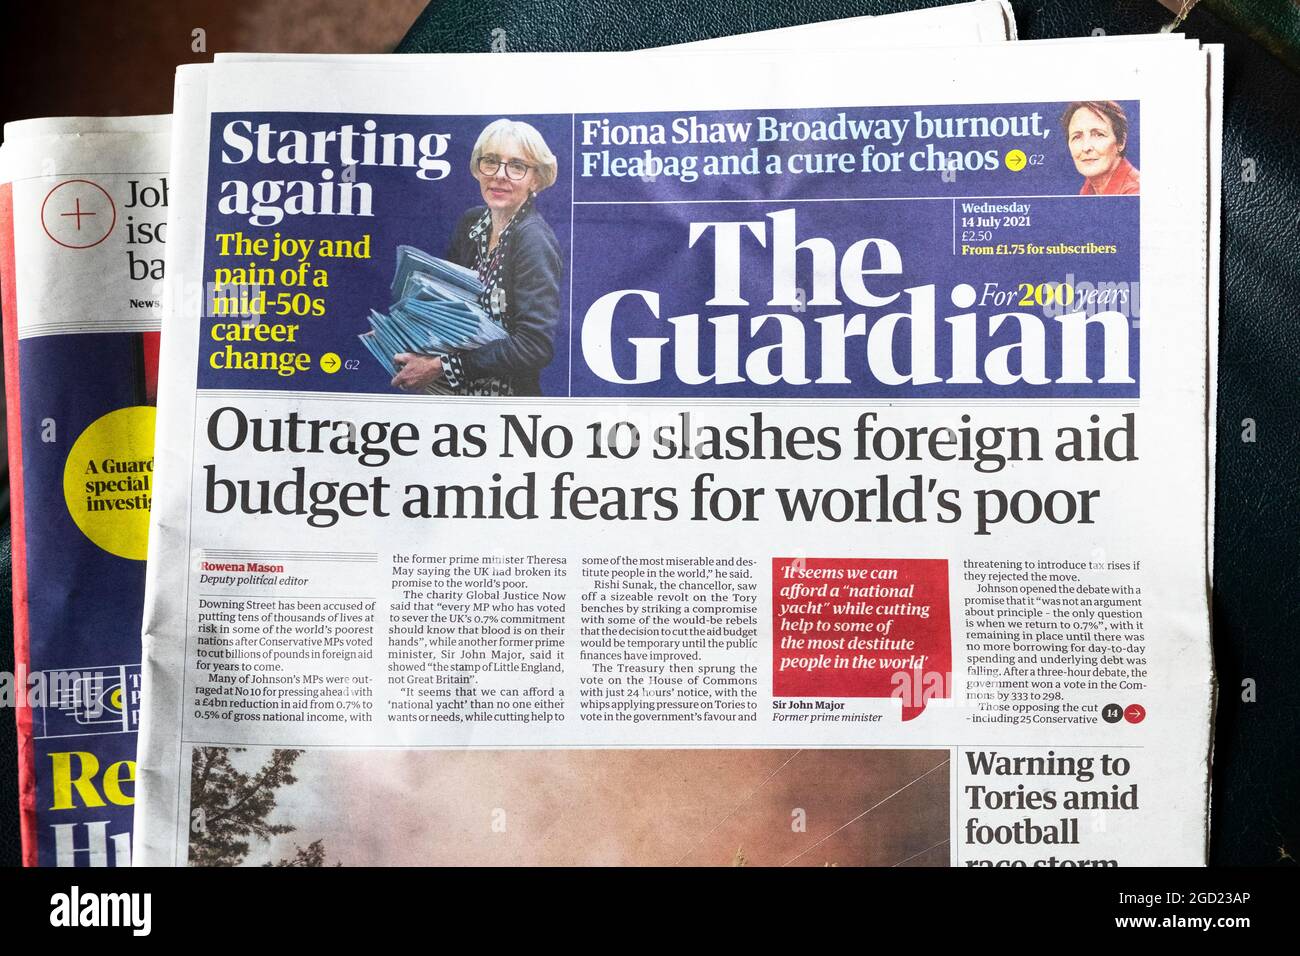 "L'indignazione come n. 10 ha ridotto il bilancio degli aiuti esteri tra i timori per i poveri del mondo" titolo della prima pagina del giornale Guardian il 14 luglio 2021 Londra Inghilterra UK Foto Stock